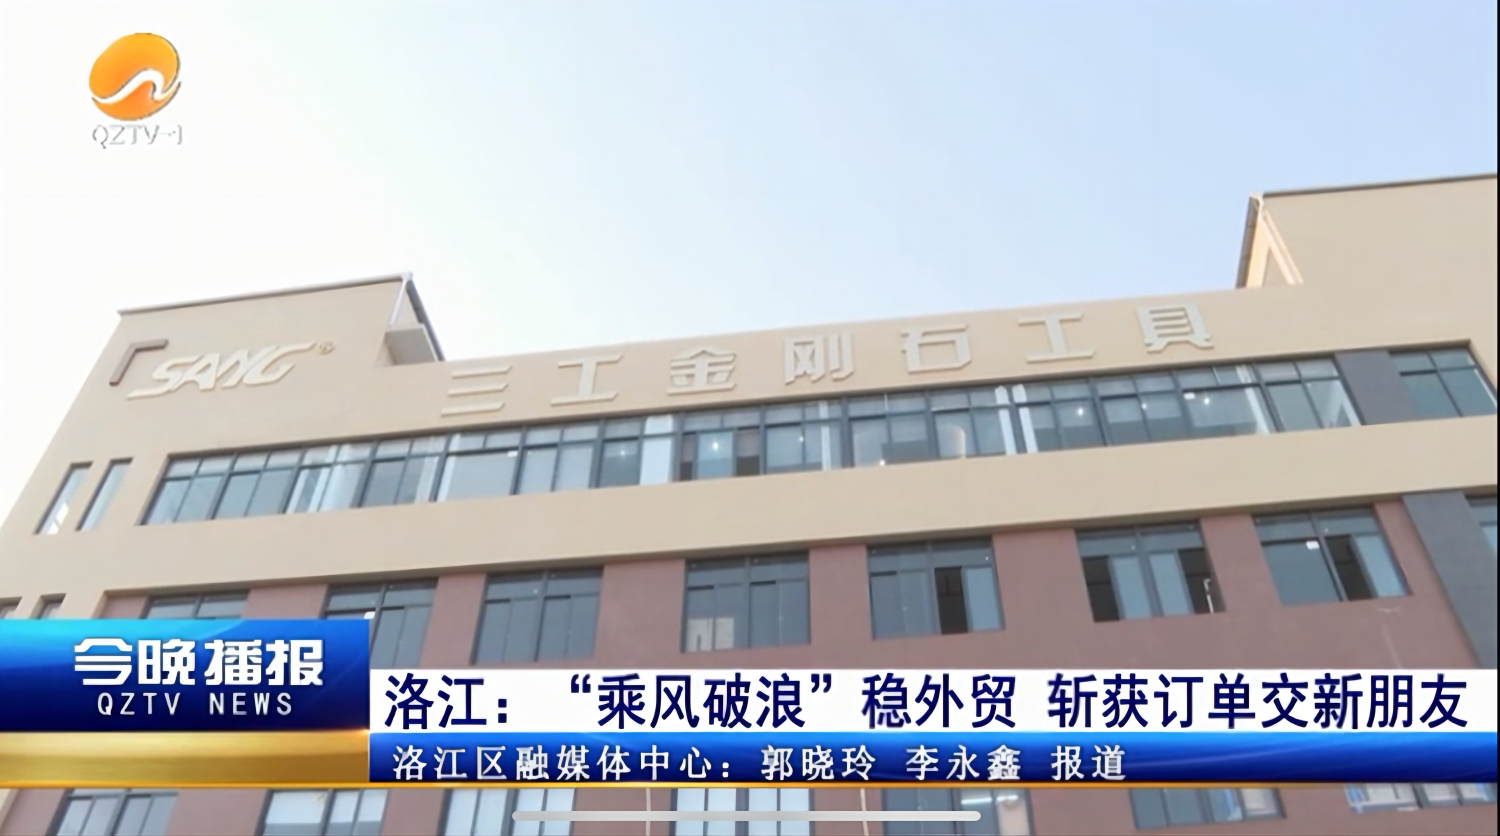 Quanzhou Sang Diamond Tools è stato segnalato da The People's Daily e QZTV